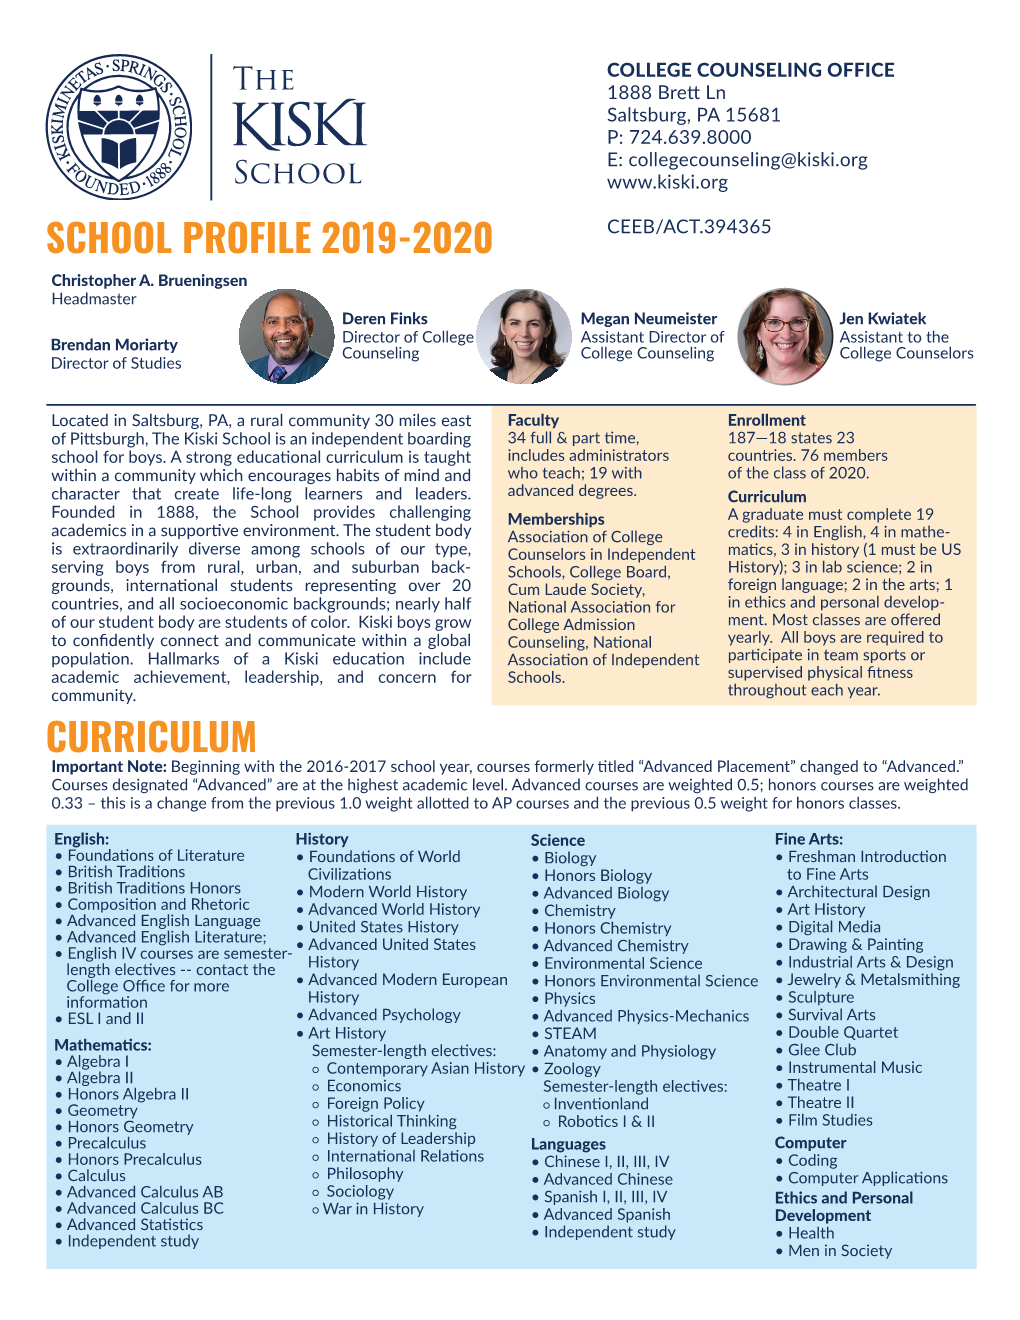 School Profile 2019-2020 Curriculum